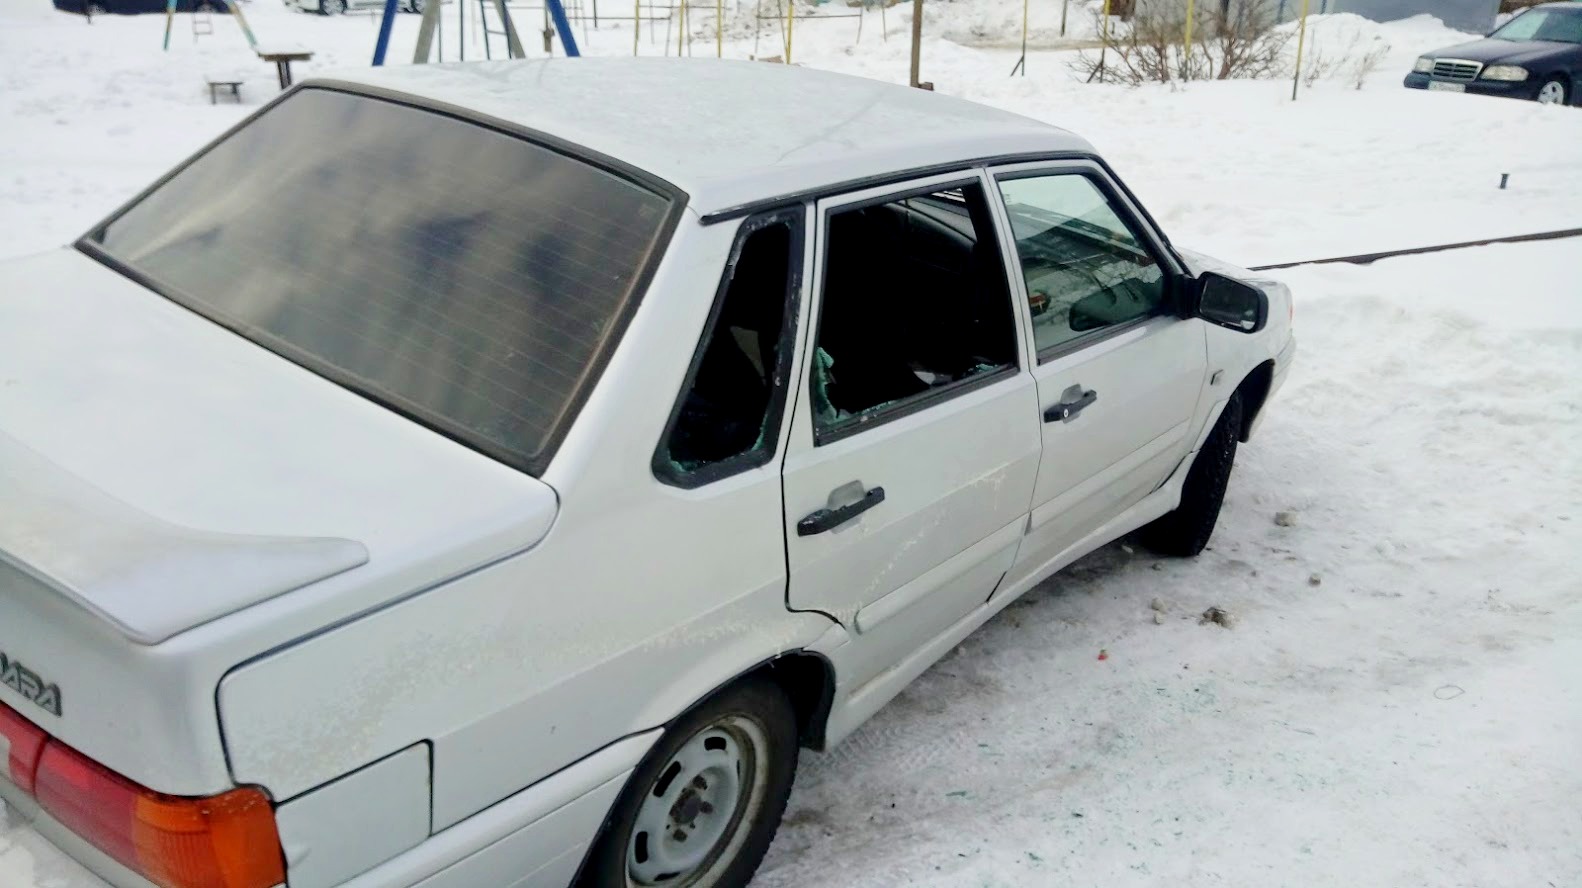 10 машин в Щучинске были вскрыты и разбиты стекла, совершены попытки угона